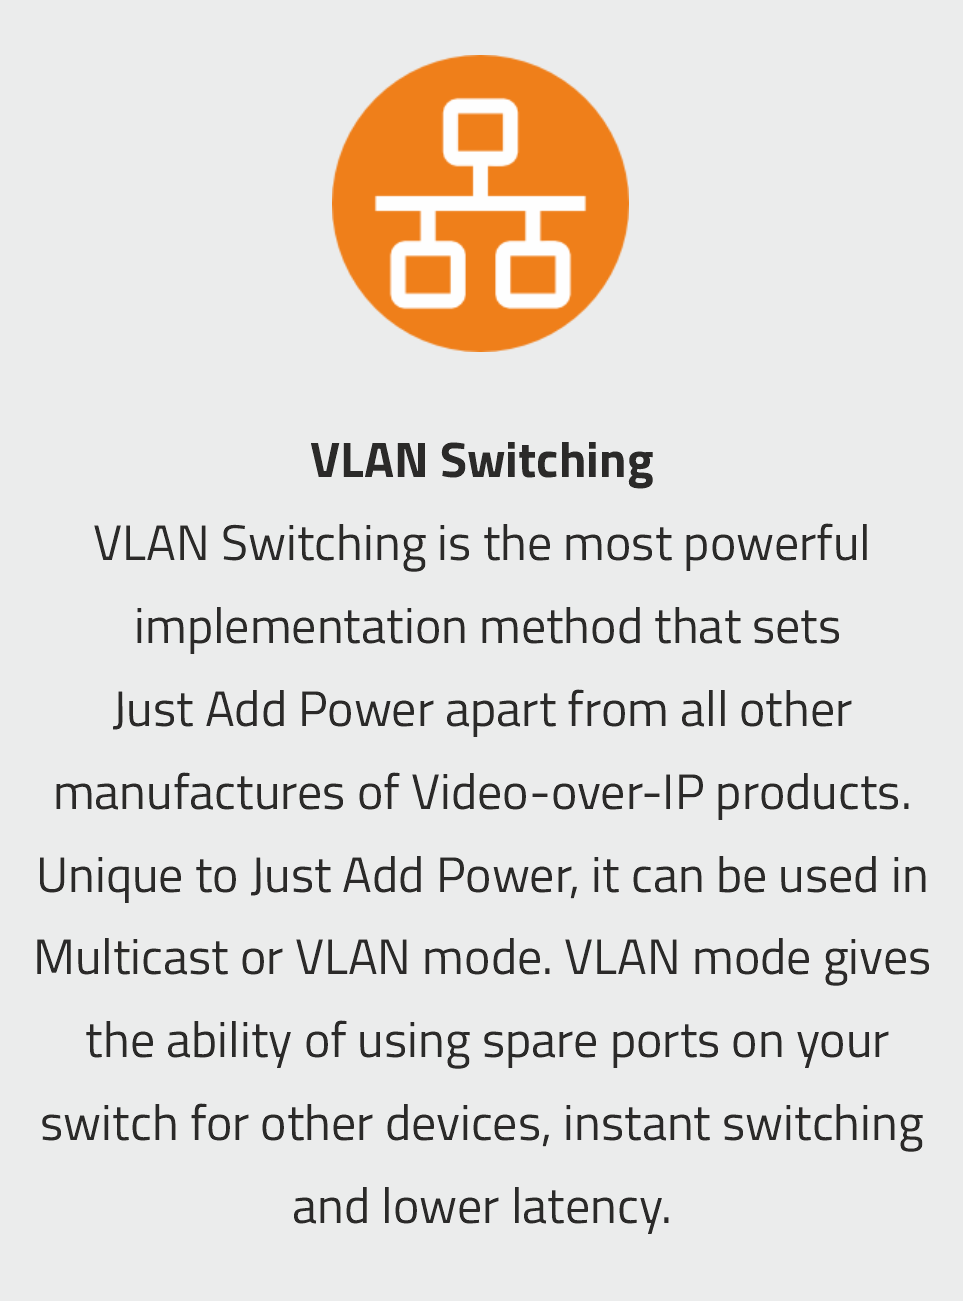 VLAN Switching